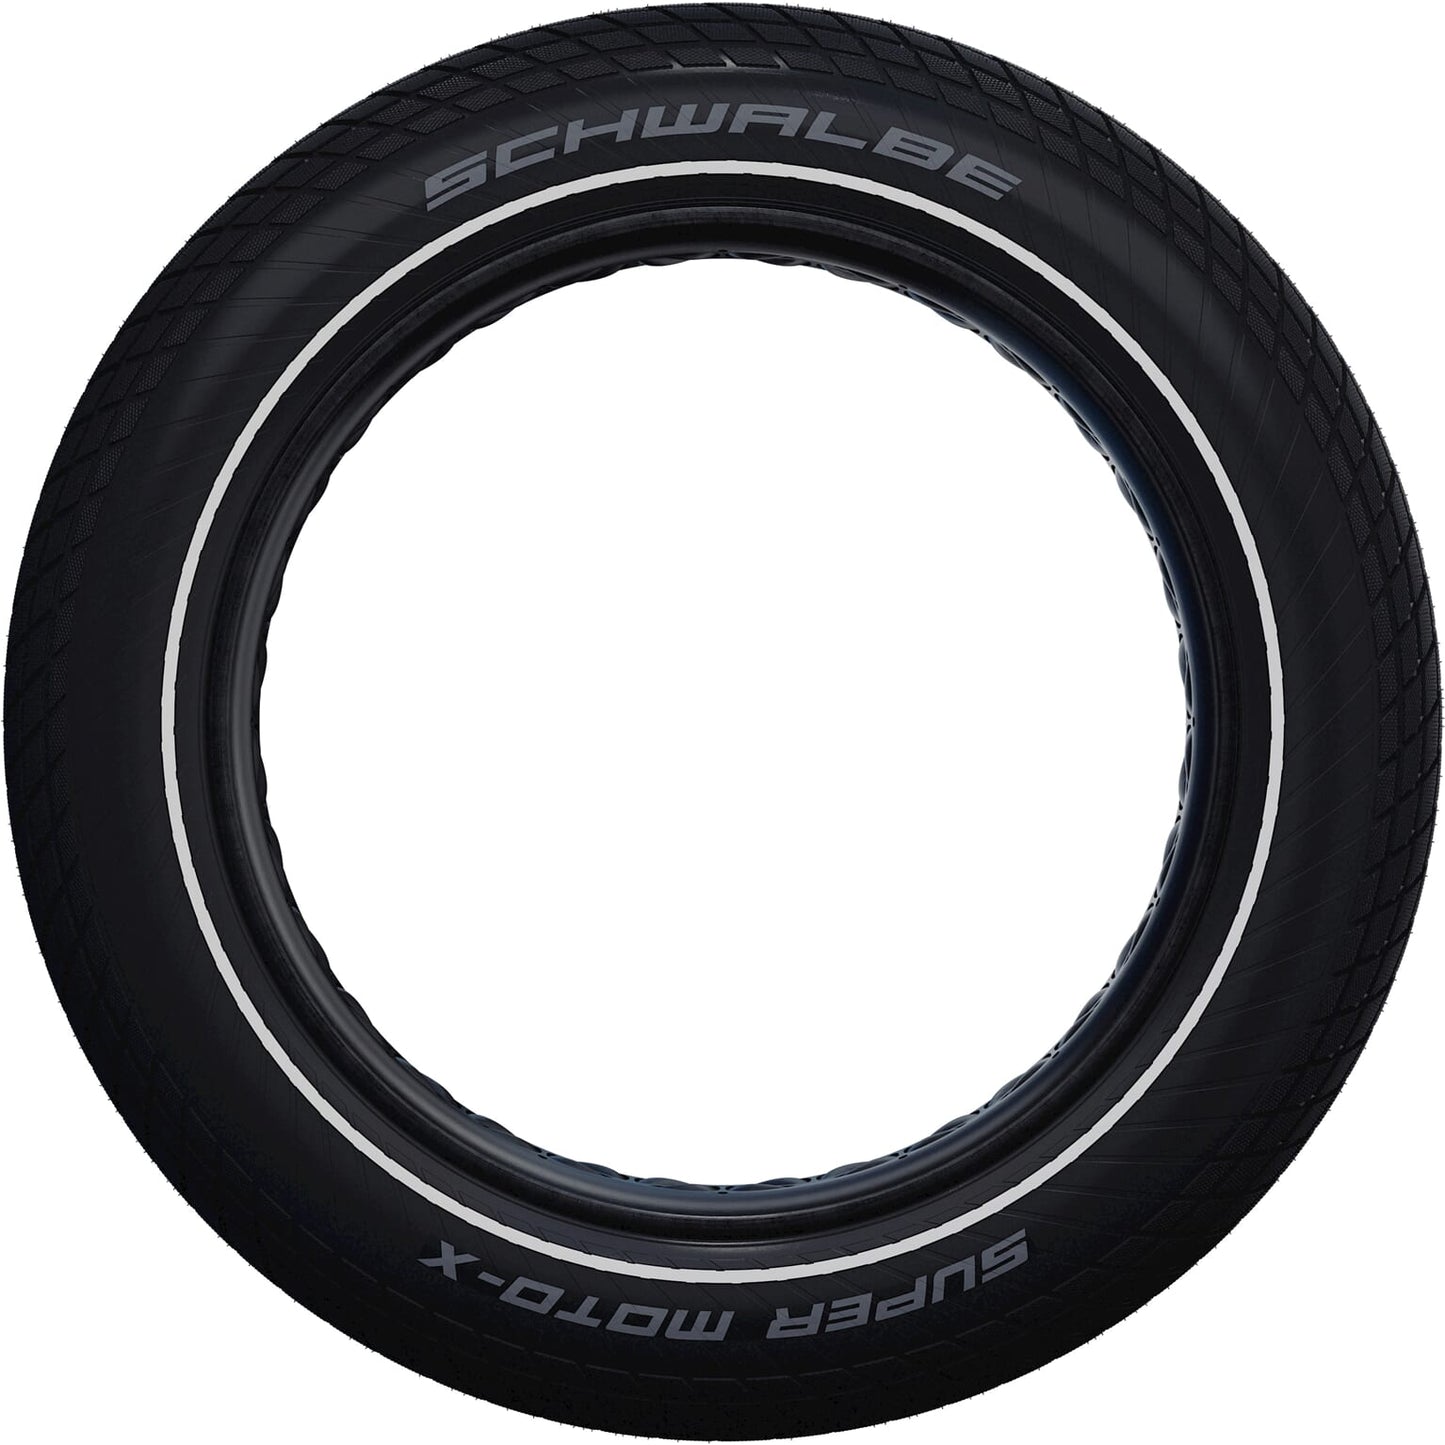 Schwalbe Super moto-x 20x4.00 (100-406) fatbike reflex zwart